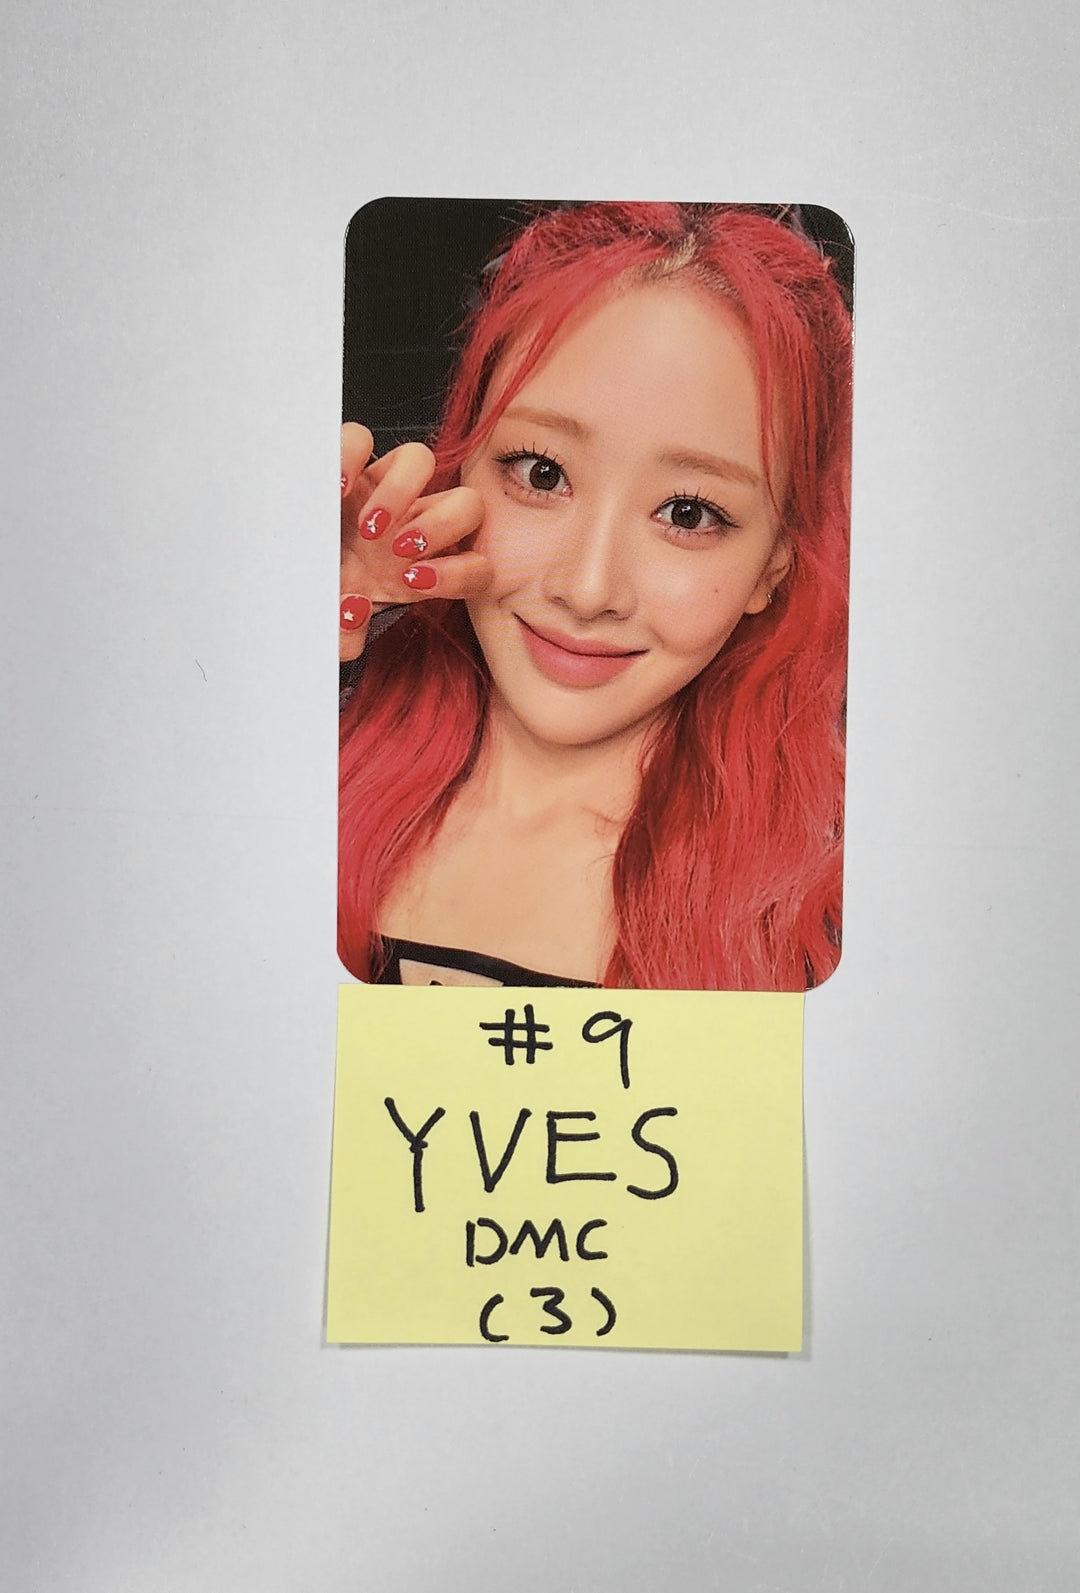 이달의 소녀 “Flip That” Summer Special Mini Album – DMC 뮤직 팬사인회 이벤트 포토카드